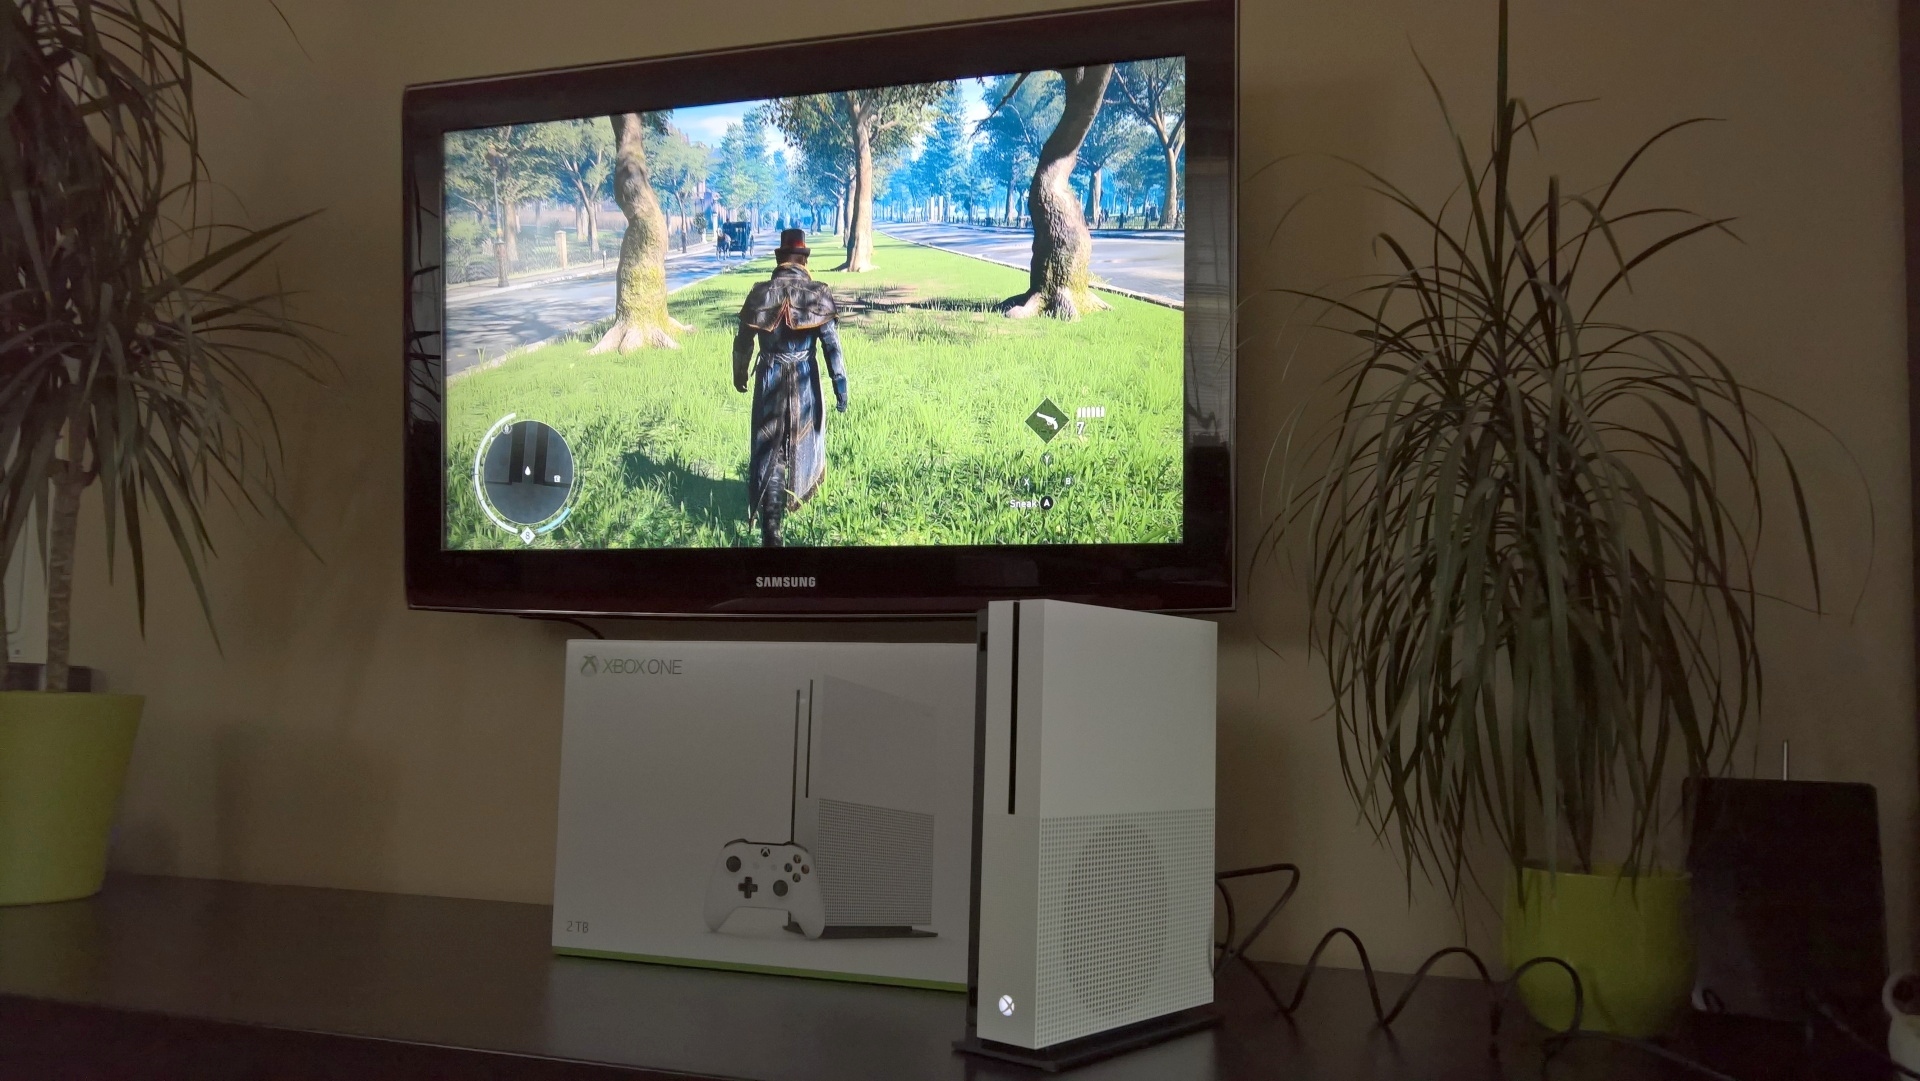 Xbox One S - test